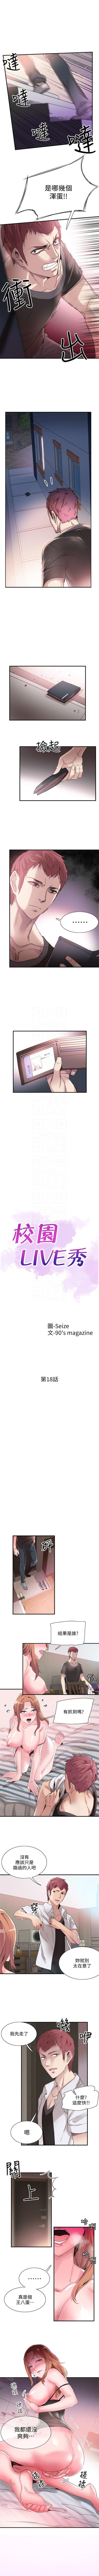 校园live秀 1-34 中文翻译（更新中） 125